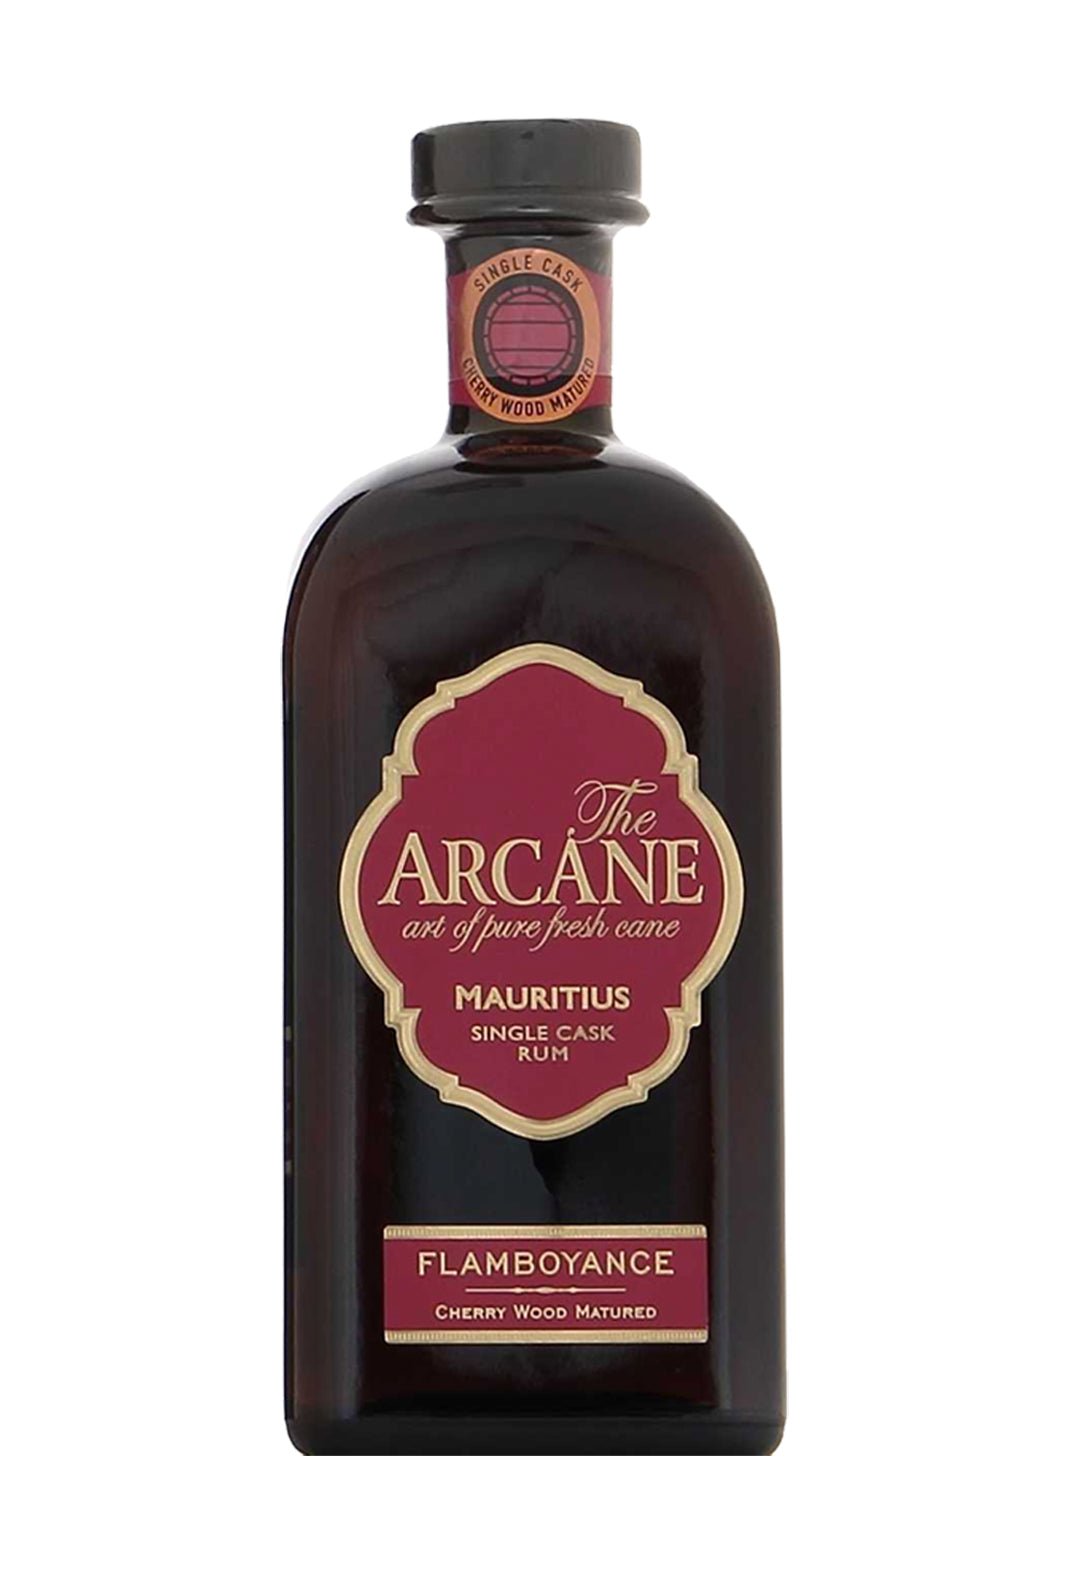 Arcane Flamboyance (Cherry Wood Matured) 40% 700ml - Rum, Rum > Traditional - Liquor Wine Cave